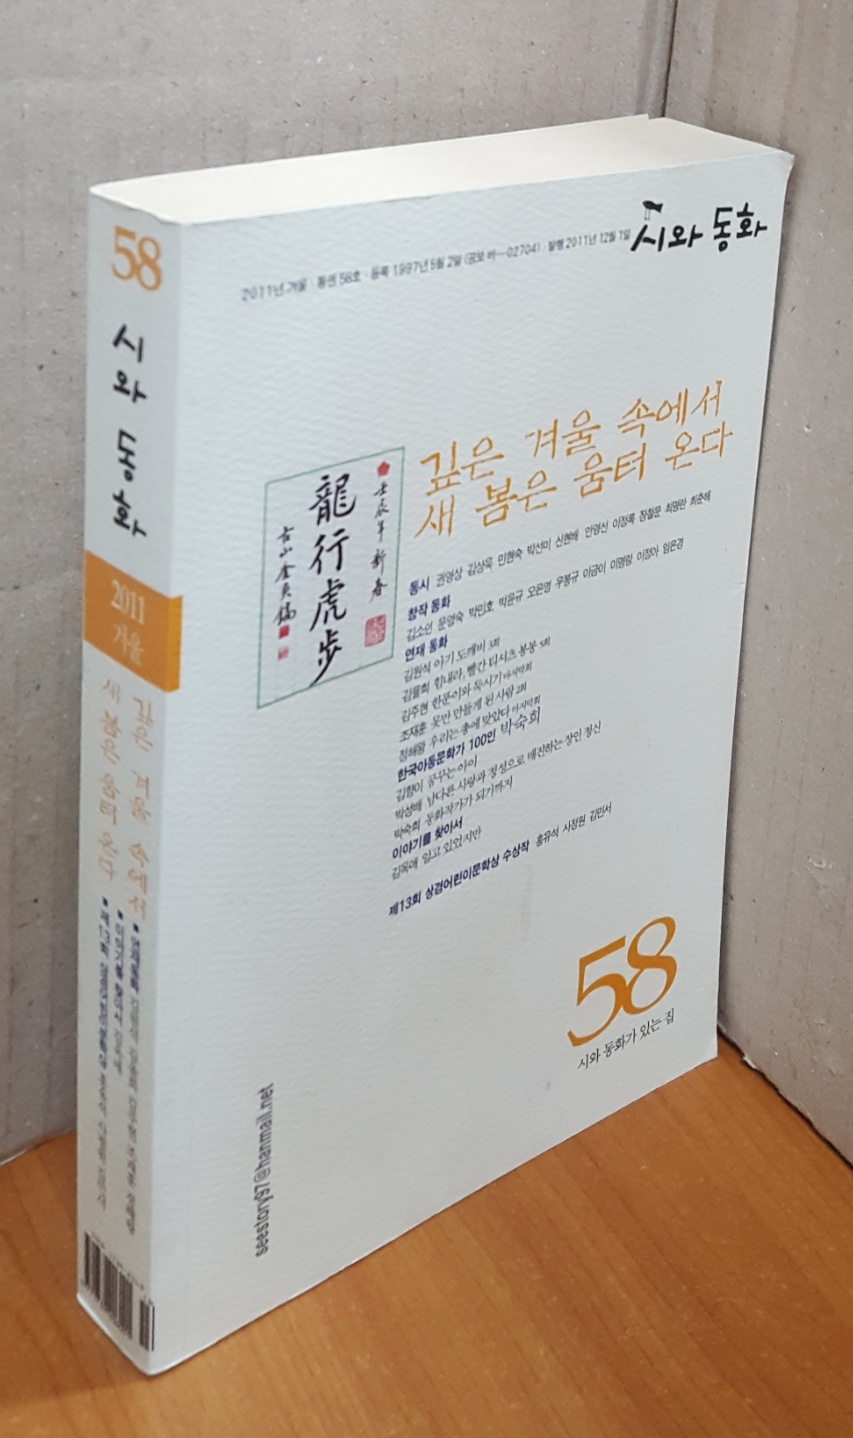 시와 동화 2011.겨울 - 58호